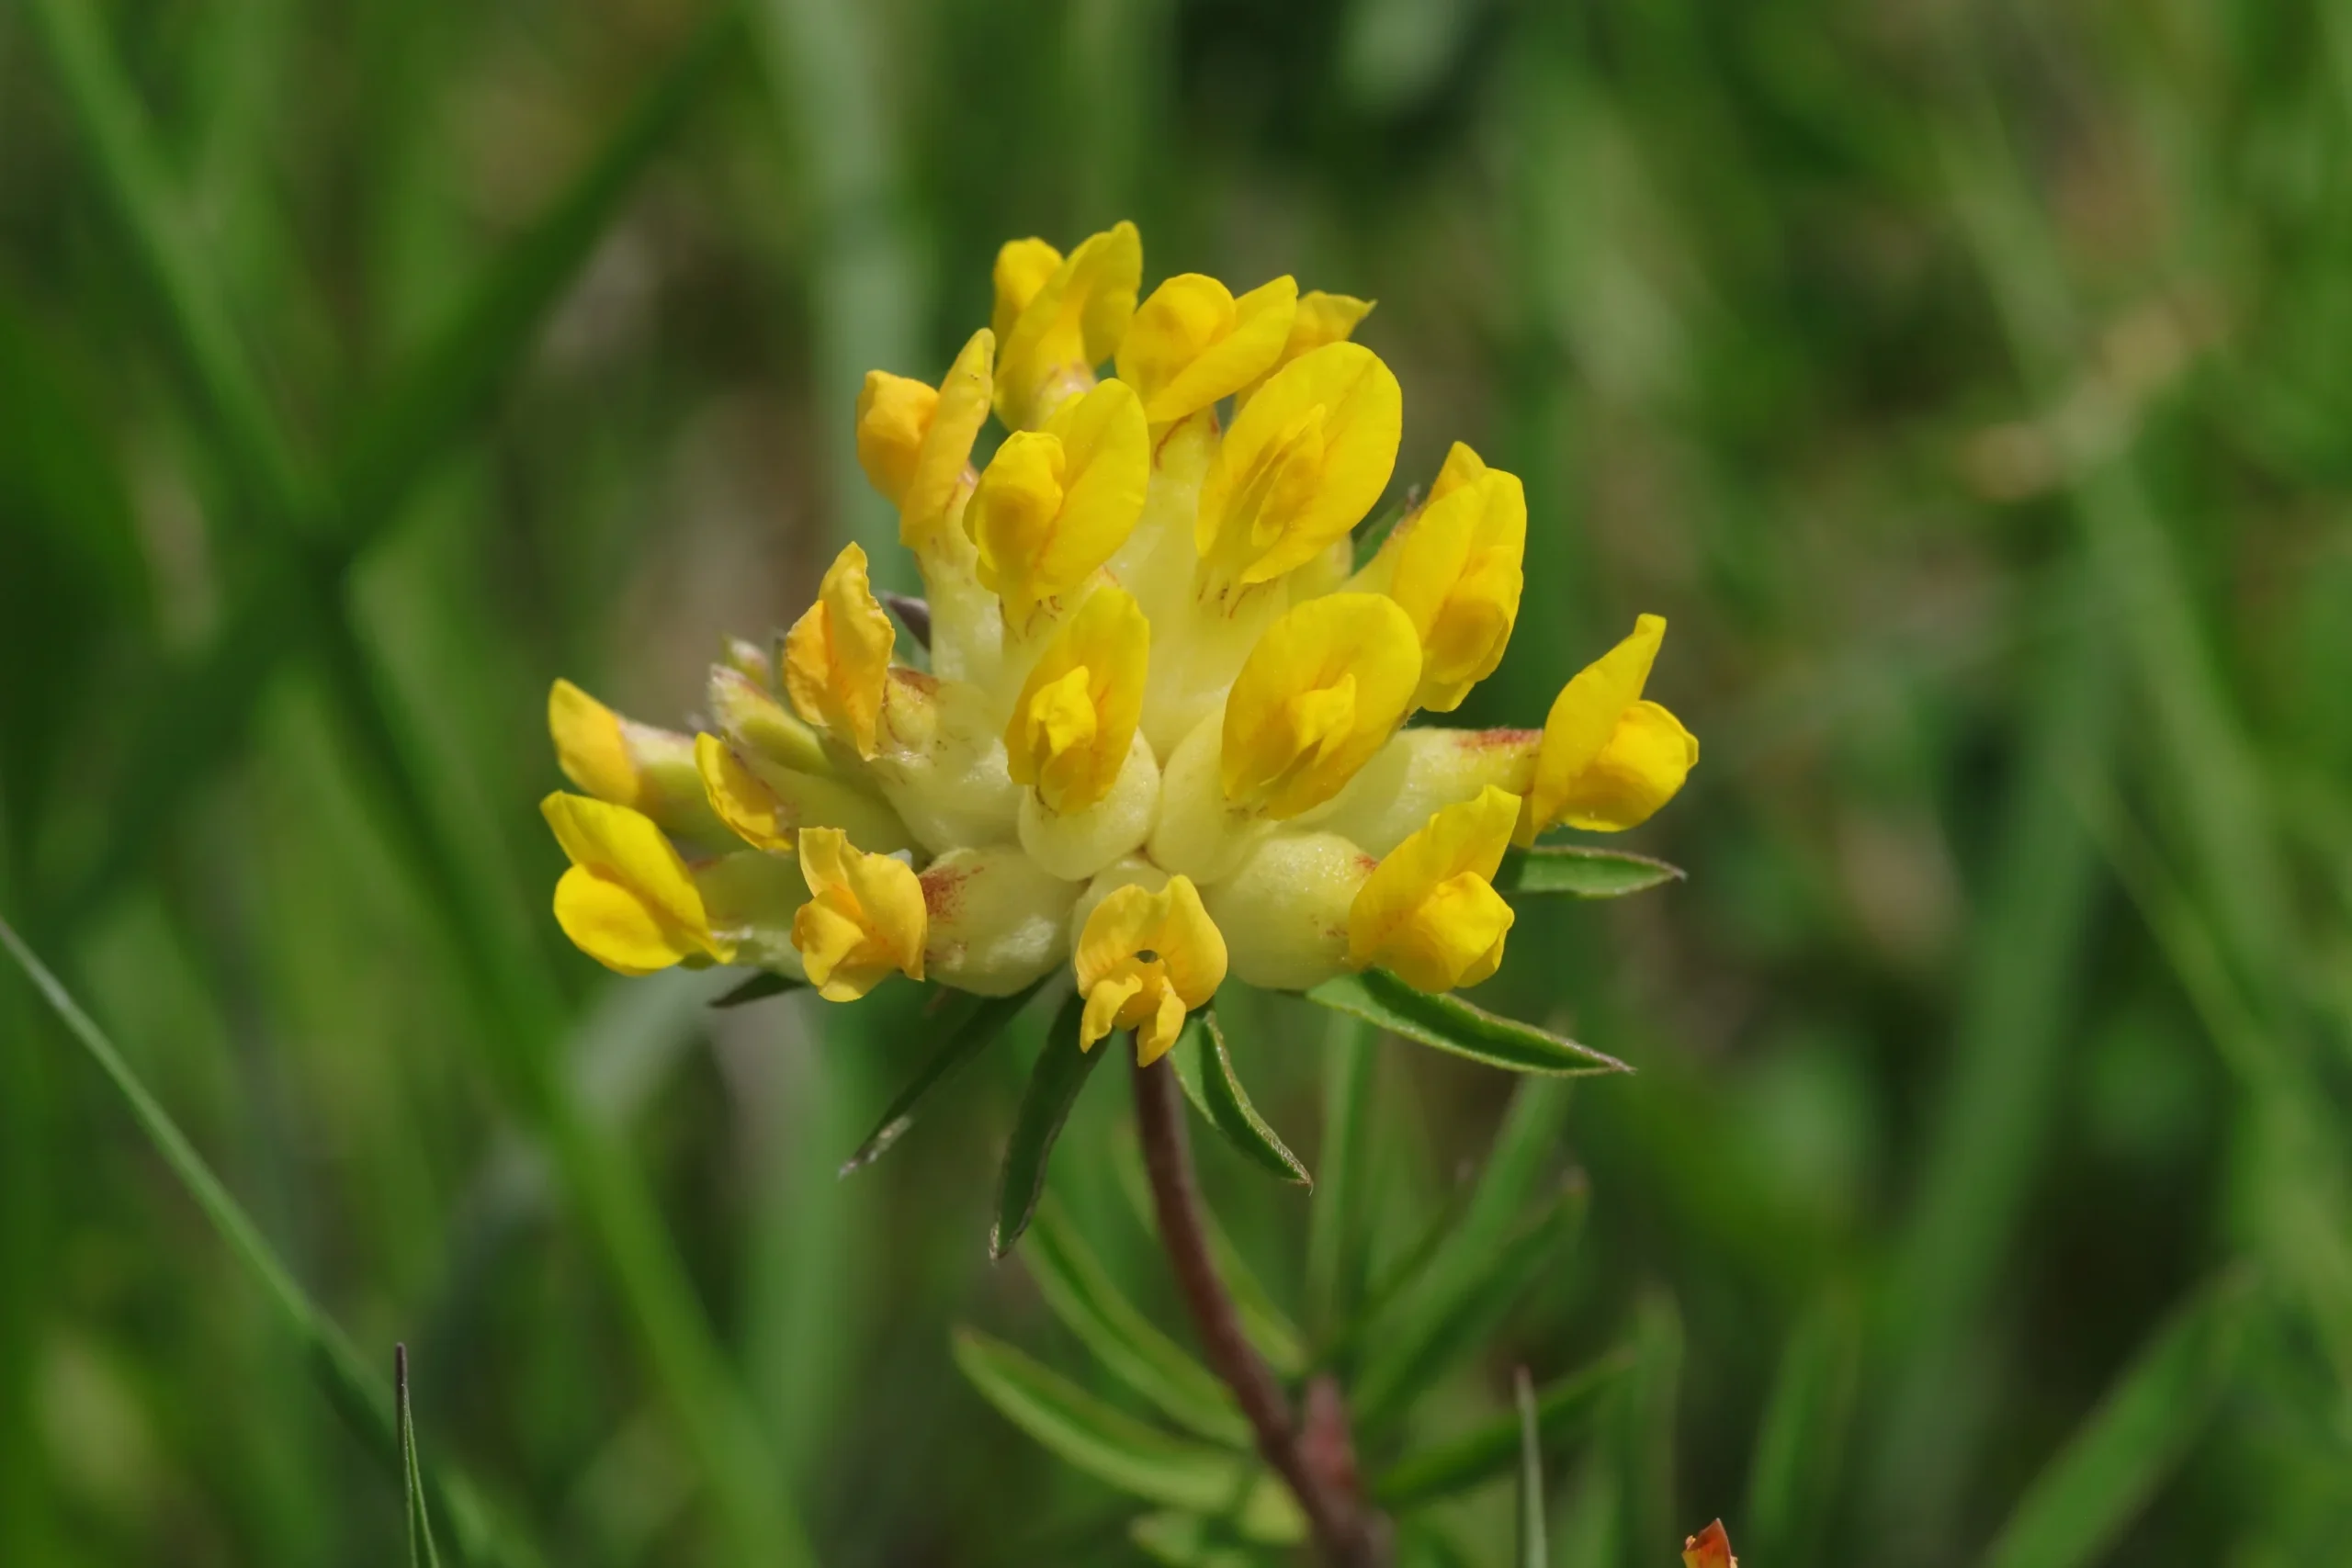 Echter Wundklee - Blüte im Detail. Die gelben Blütenstände bestehen aus einer Vielzahl von einzelnen schmetterlingsförmigen Blüten.